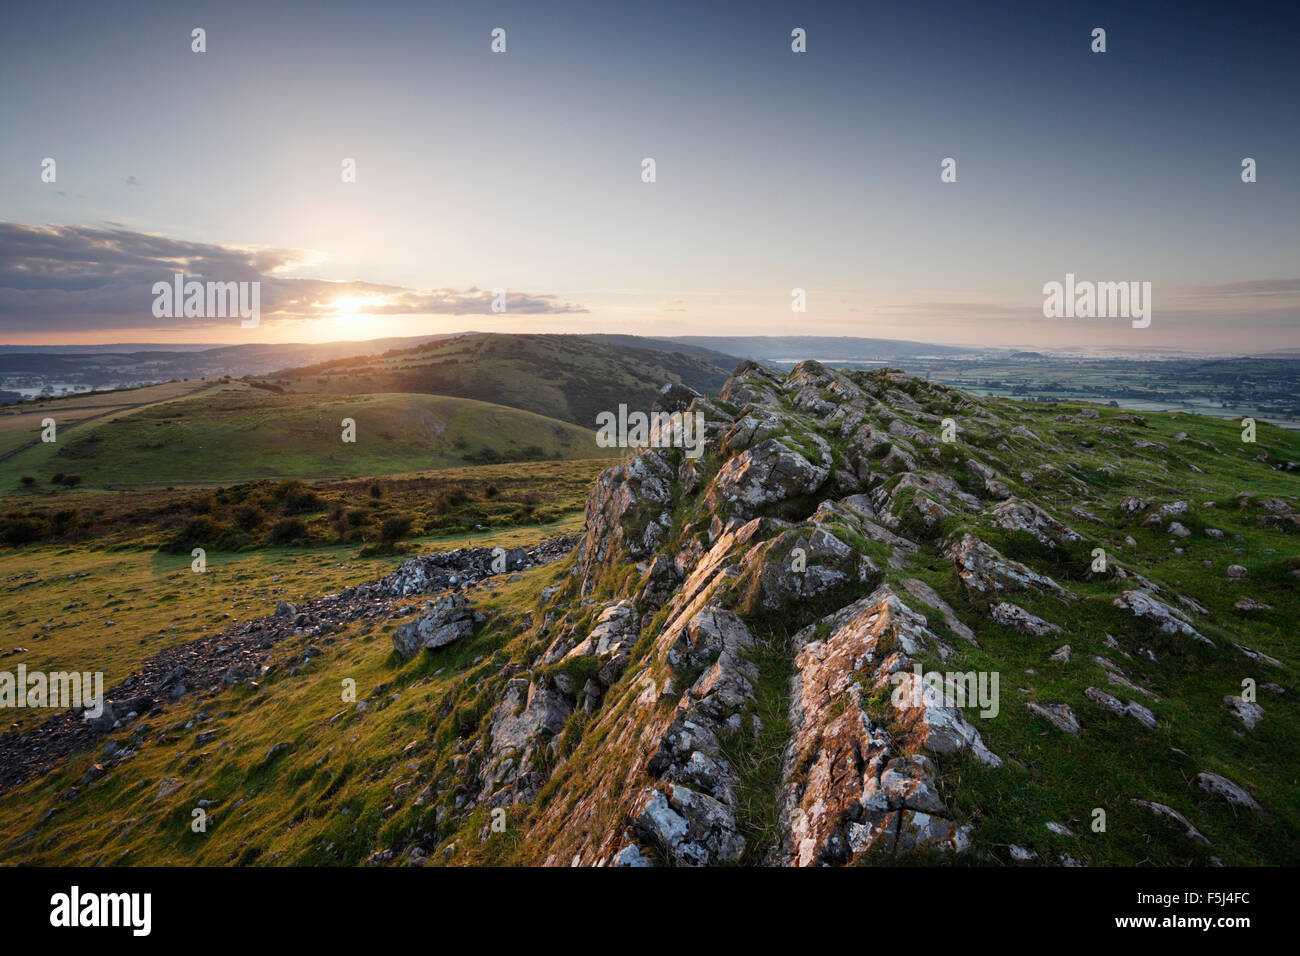 Le lever du soleil sur les collines de Mendip, pic de Crook. Le Somerset. UK. Banque D'Images